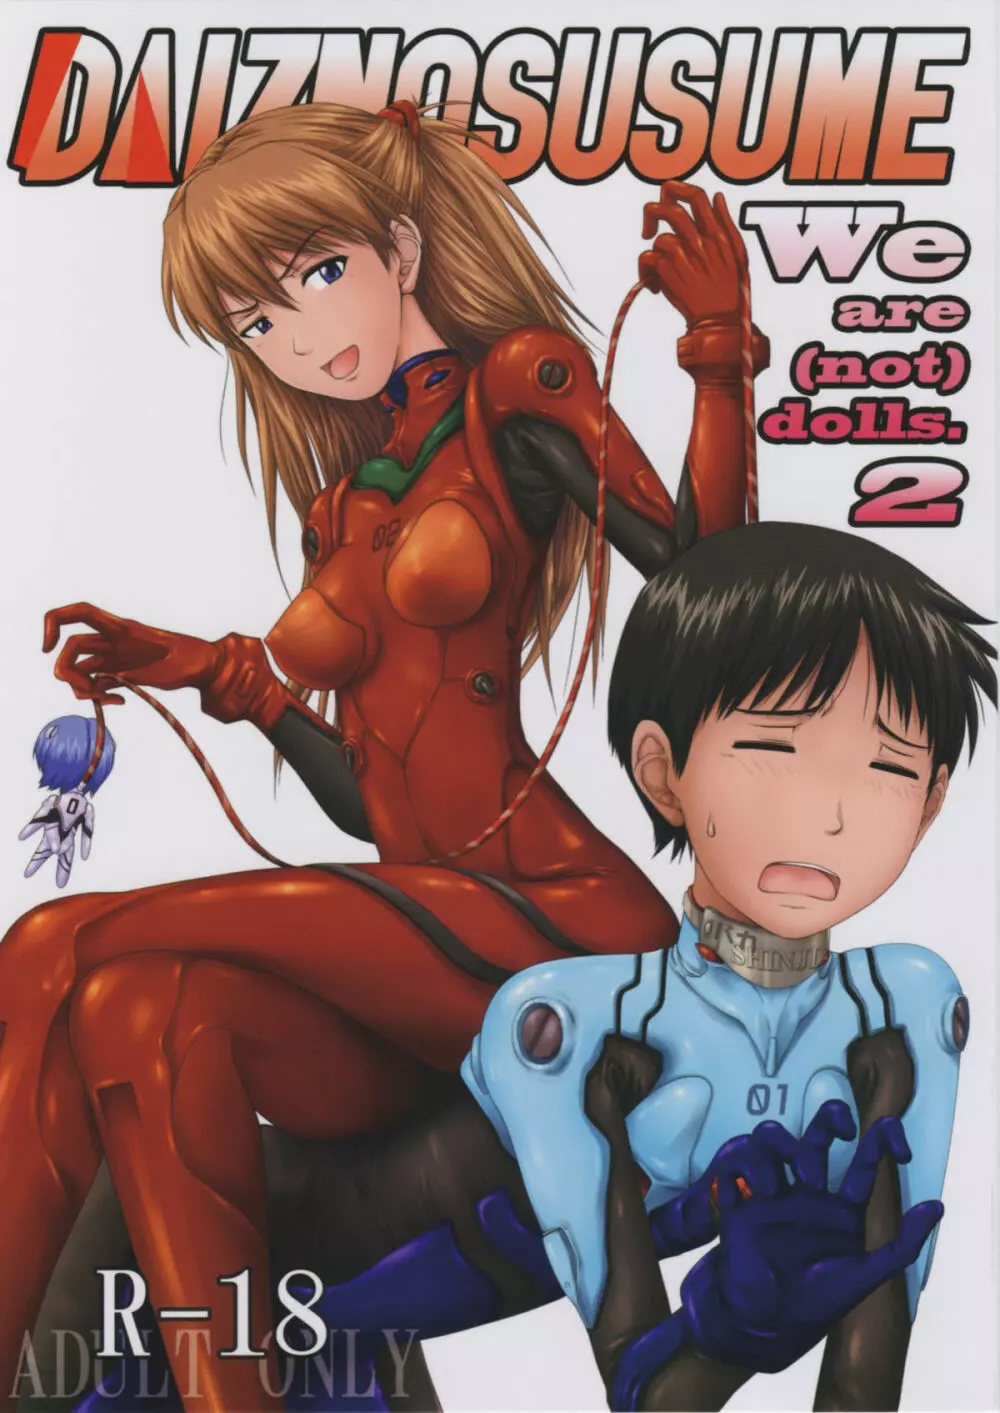 (C77) [だいずのススメ (戸山テイジ、斎藤クスヲ)] We are (not) dolls. 2 (ヱヴァンゲリヲン新劇場版)